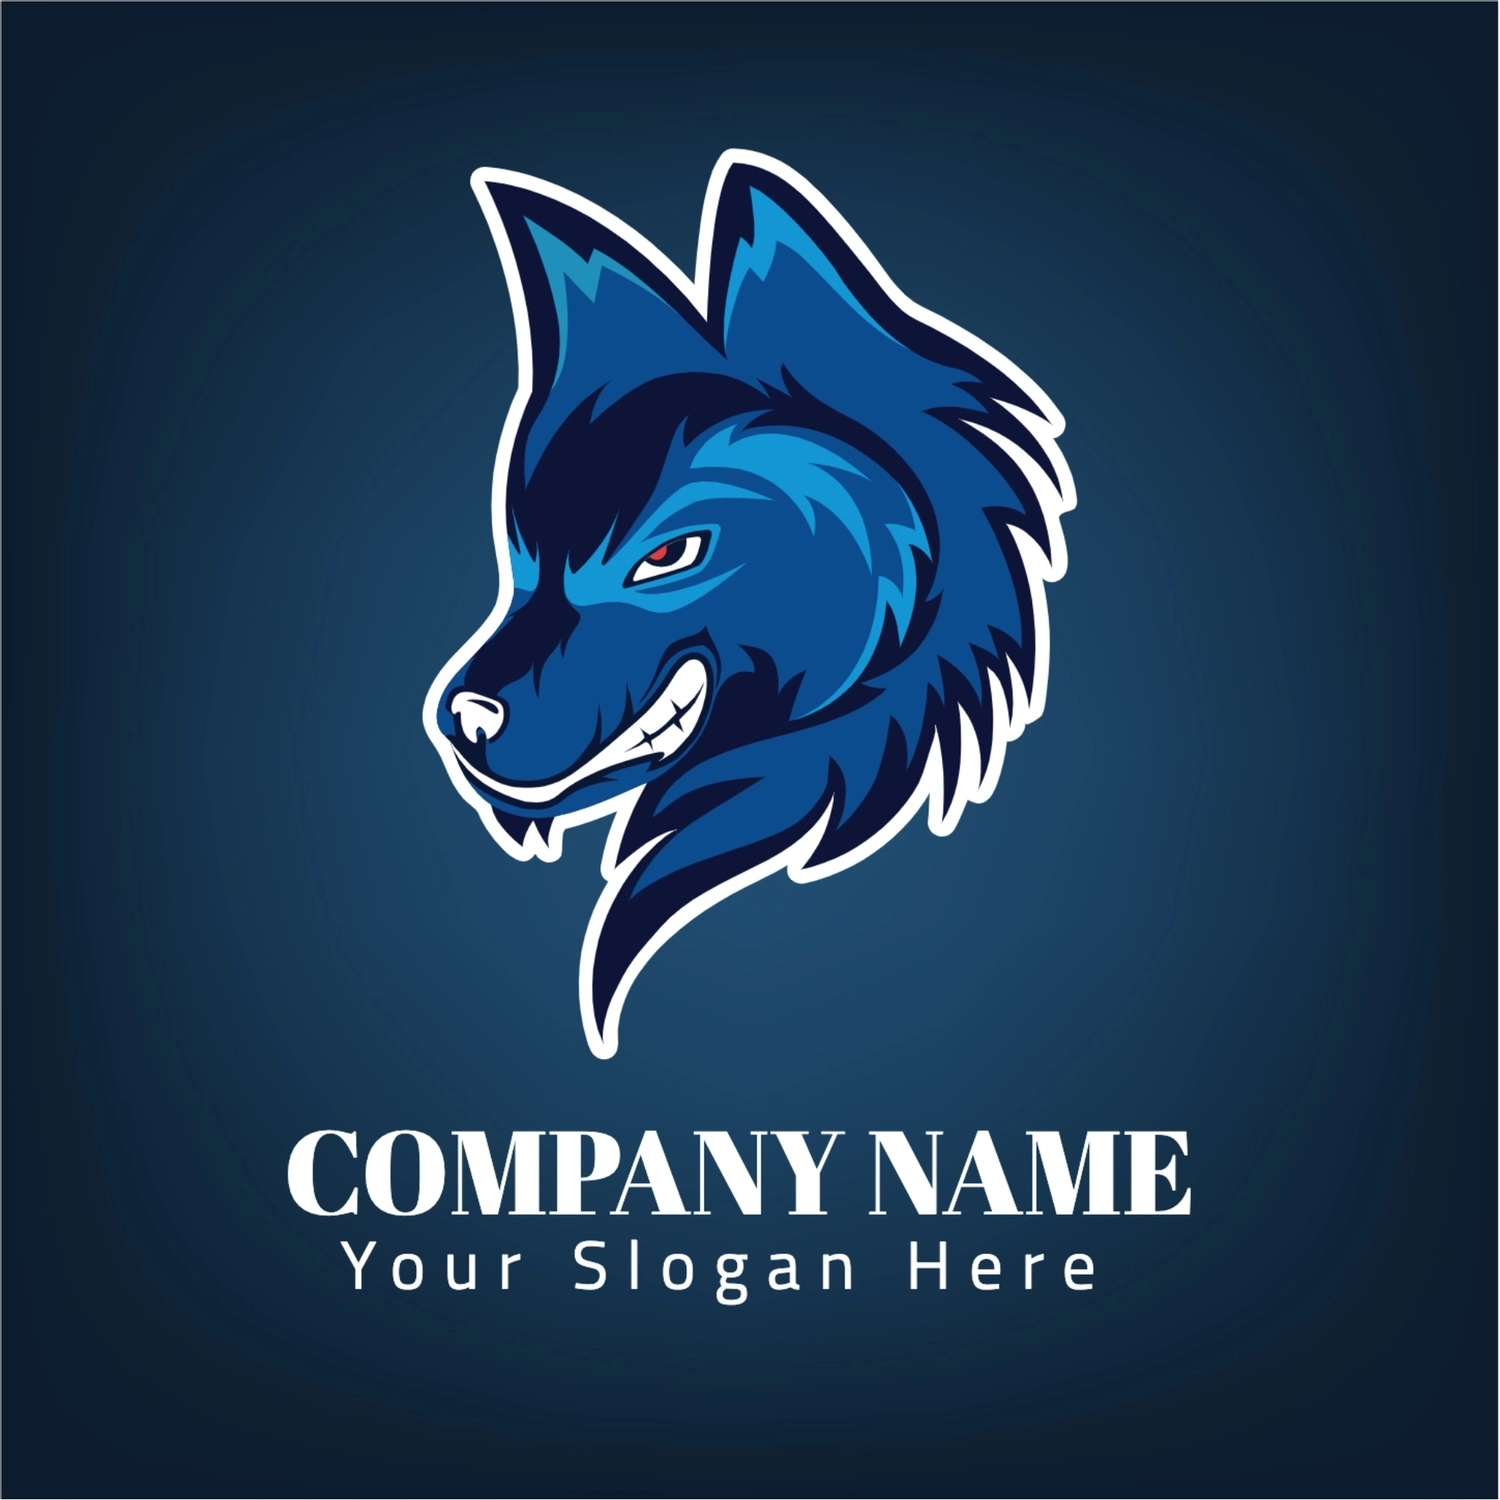 狼のロゴ, 水色, 作成, デザイン, ロゴテンプレート